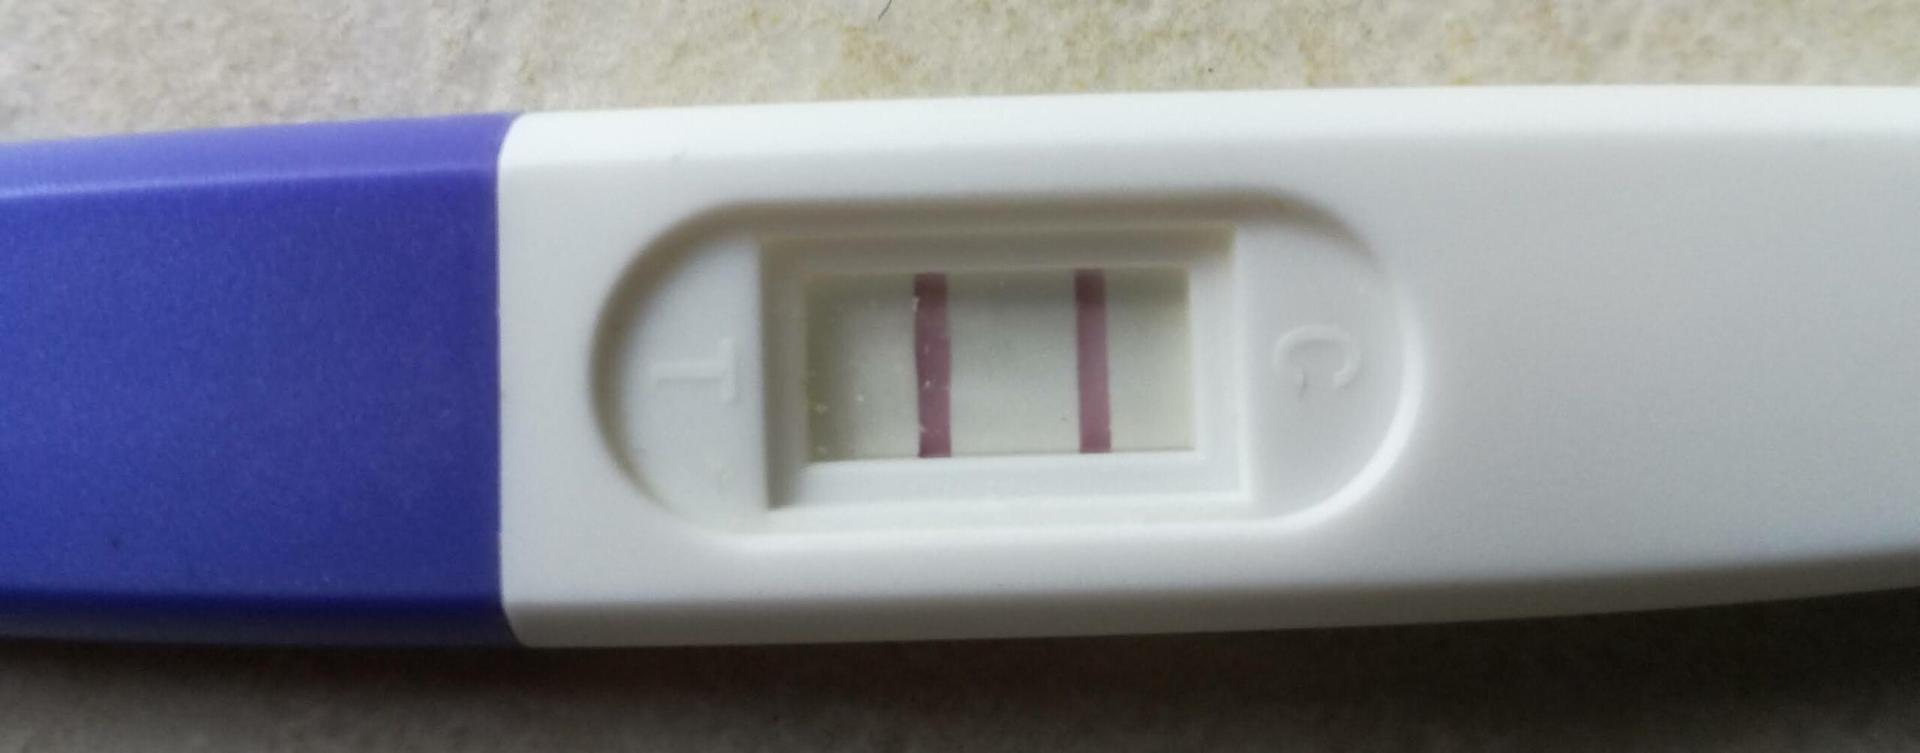 Quelle est l’utilité des tests de grossesses pour les hommes?